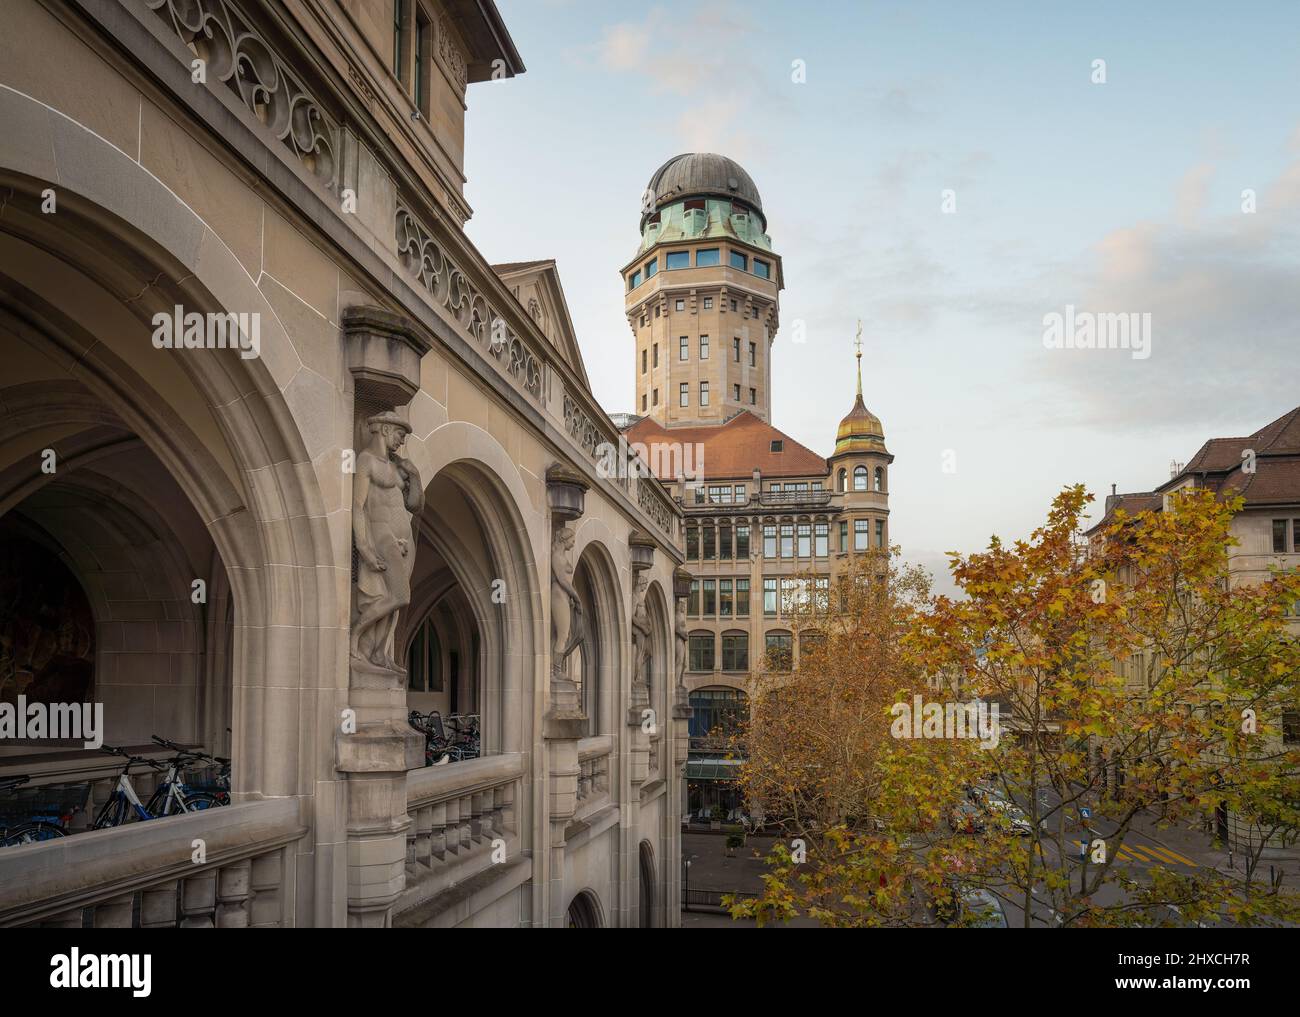 Urania Sternwarte und Amtshaus Gebäude - Zürich, Schweiz Stockfoto